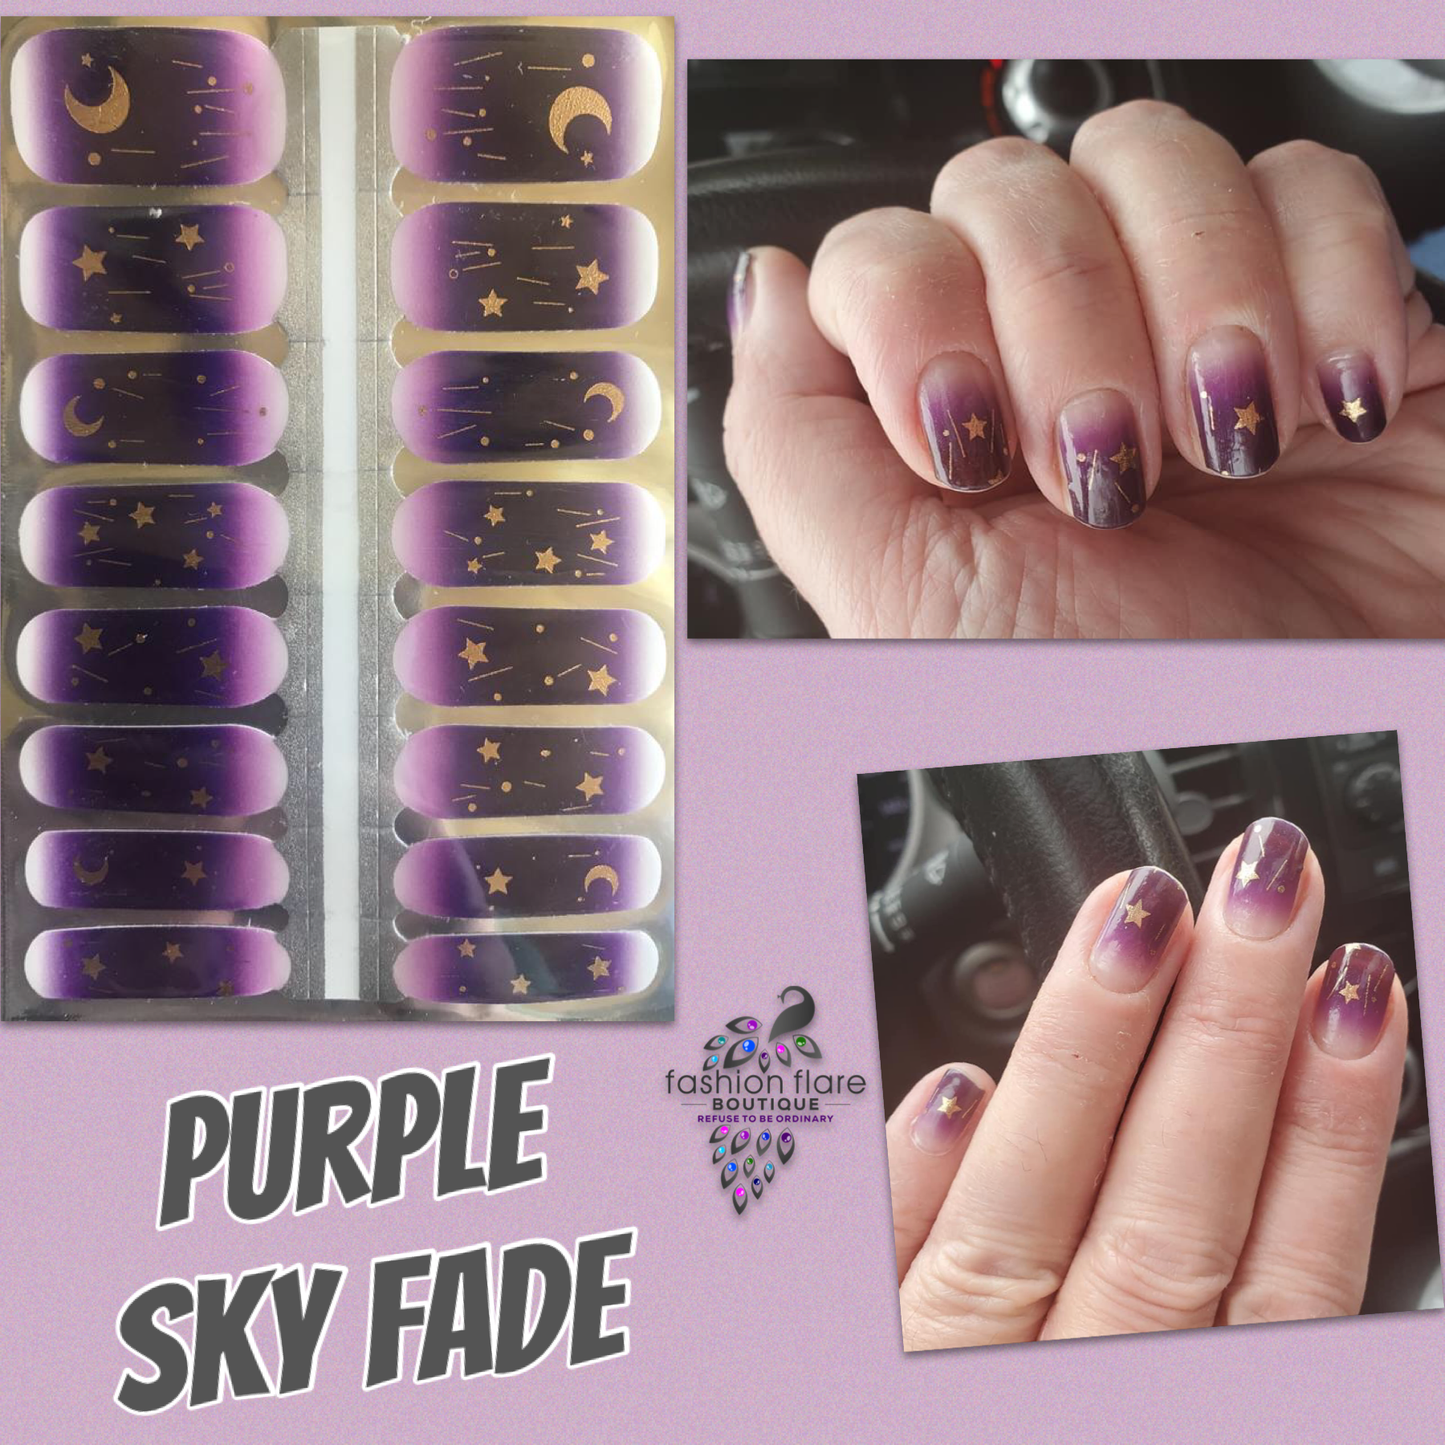 Purple Sky Fade